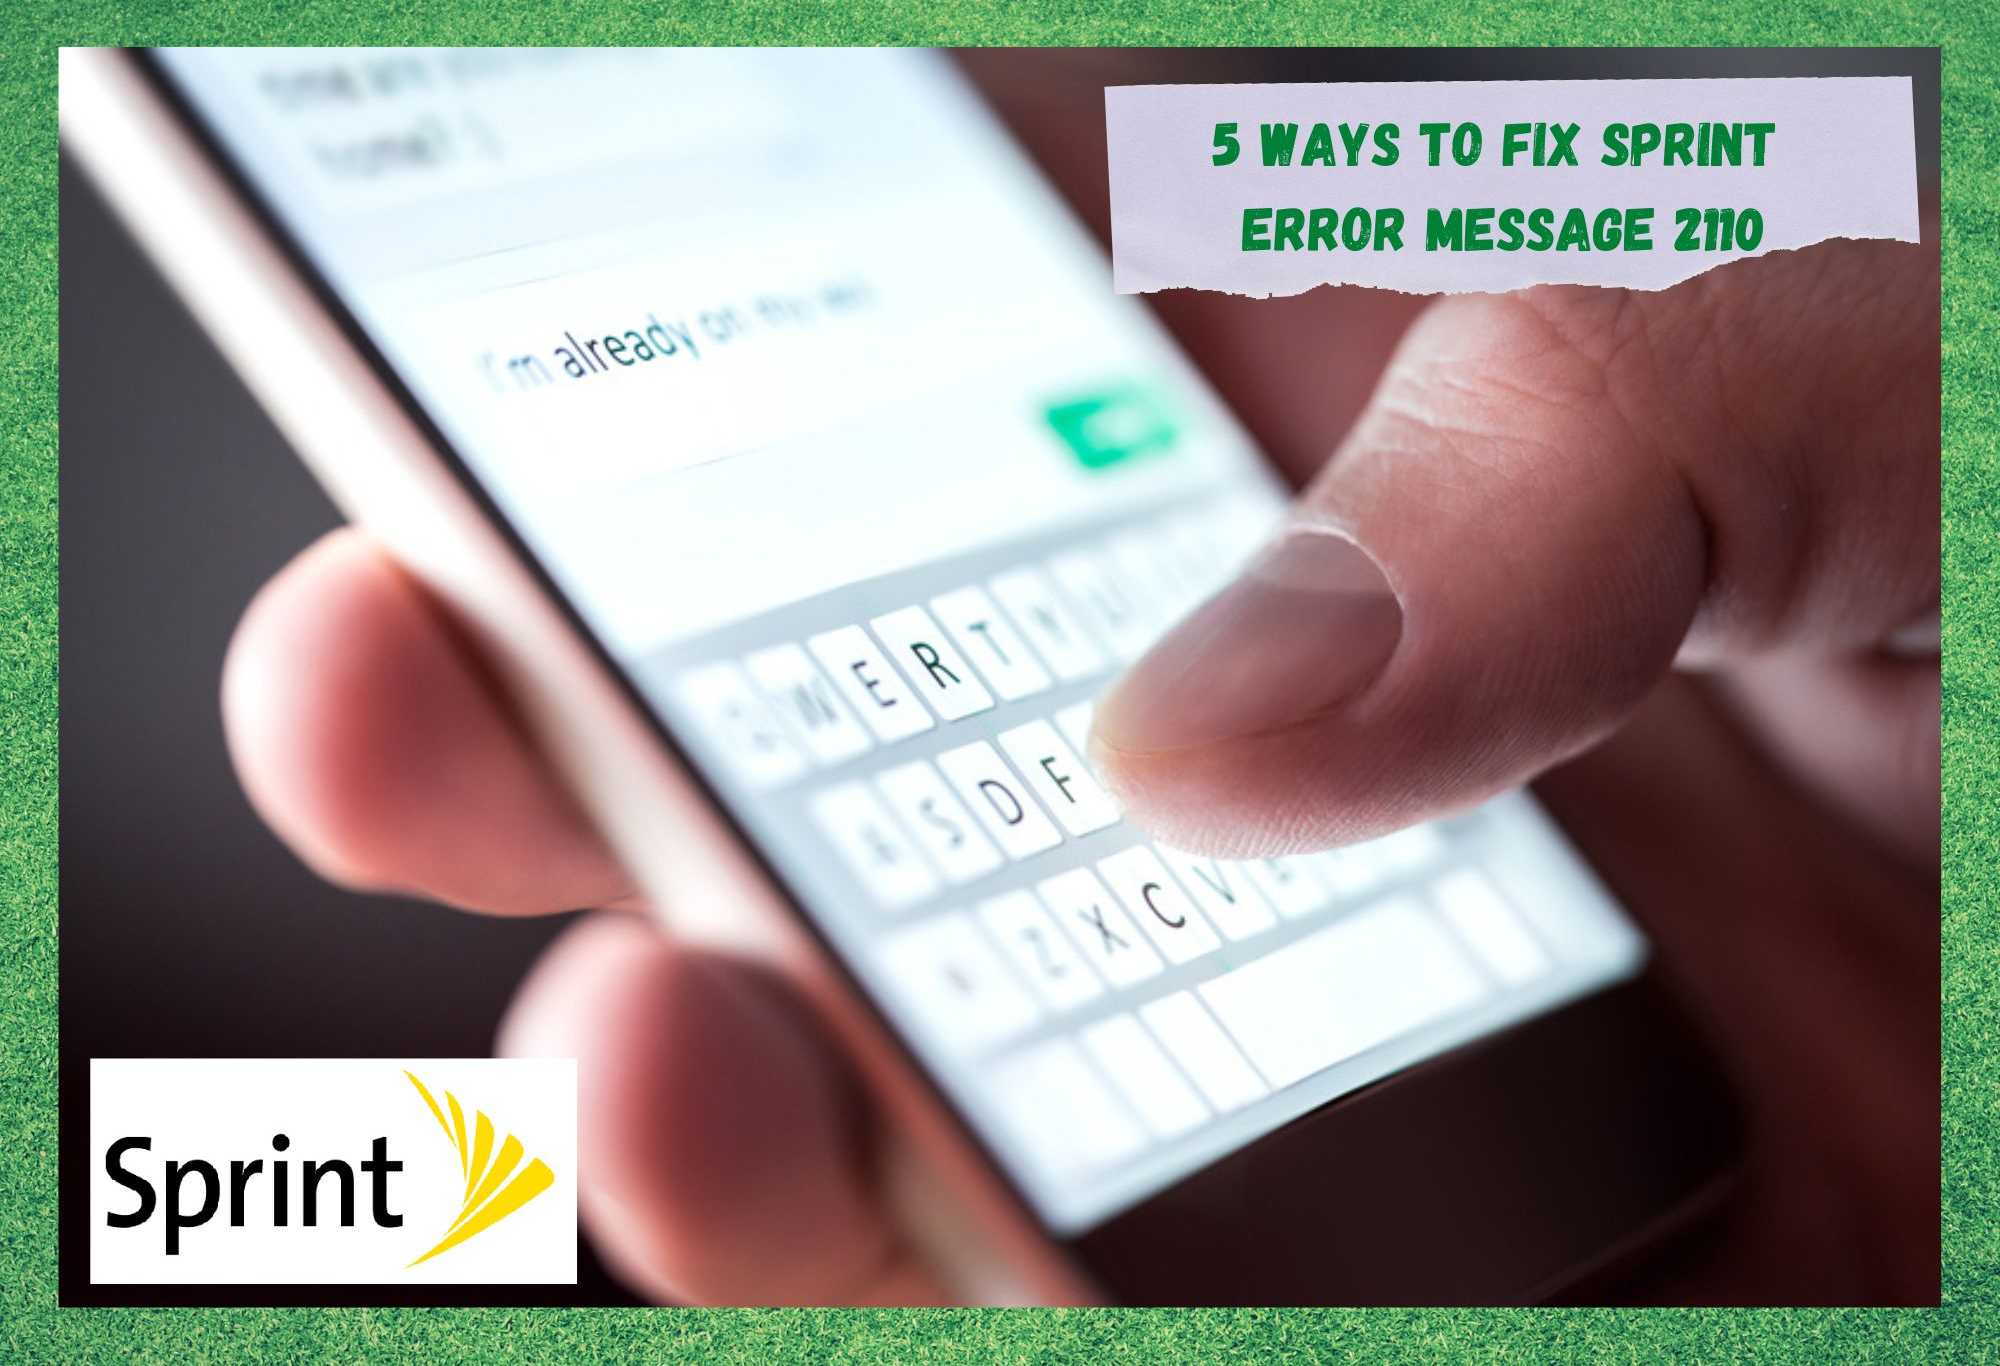 Sprint Error Message 2110 ကို ပြင်ဆင်ရန် နည်းလမ်း 5 ခု